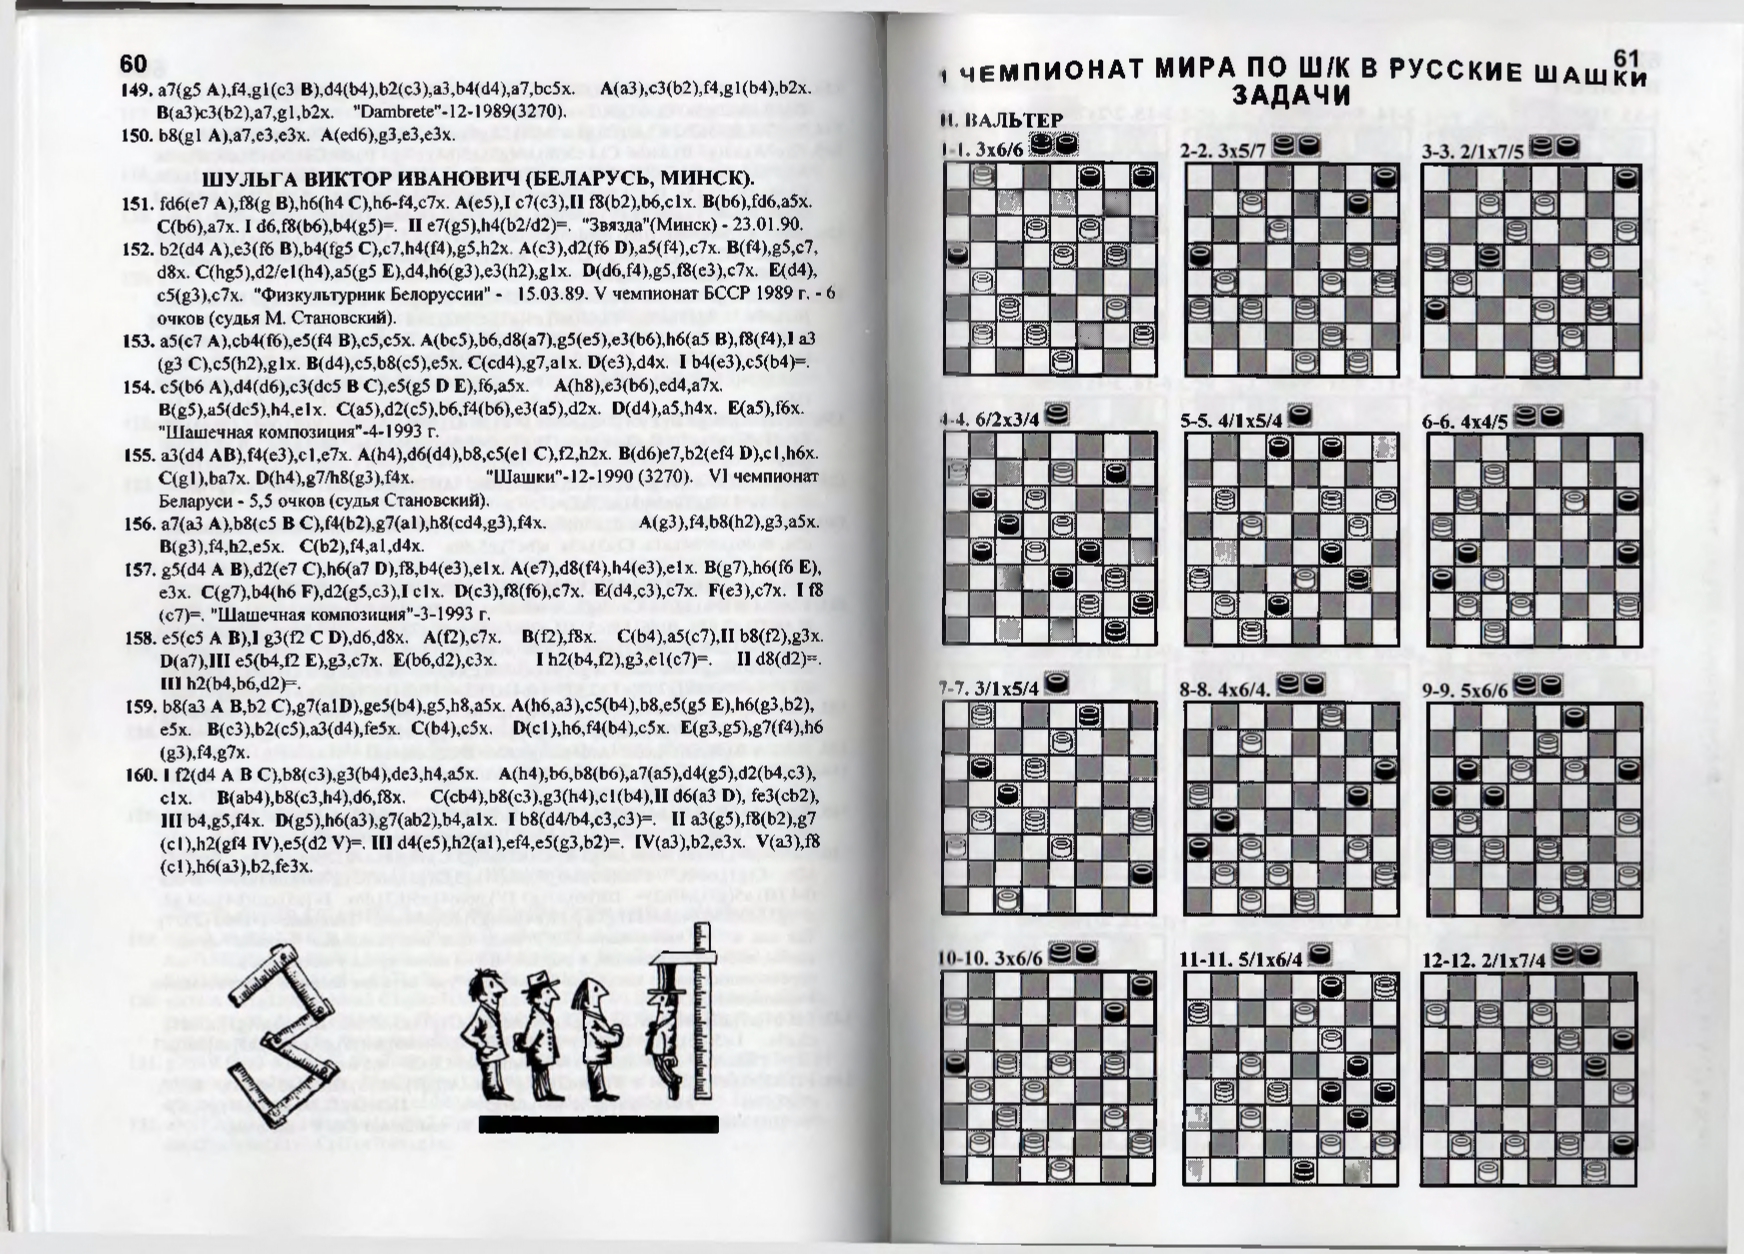 Gorin-Chempionat_mira_po_shashechnoy_kompozitsii_1994-339_page-0032.jpg